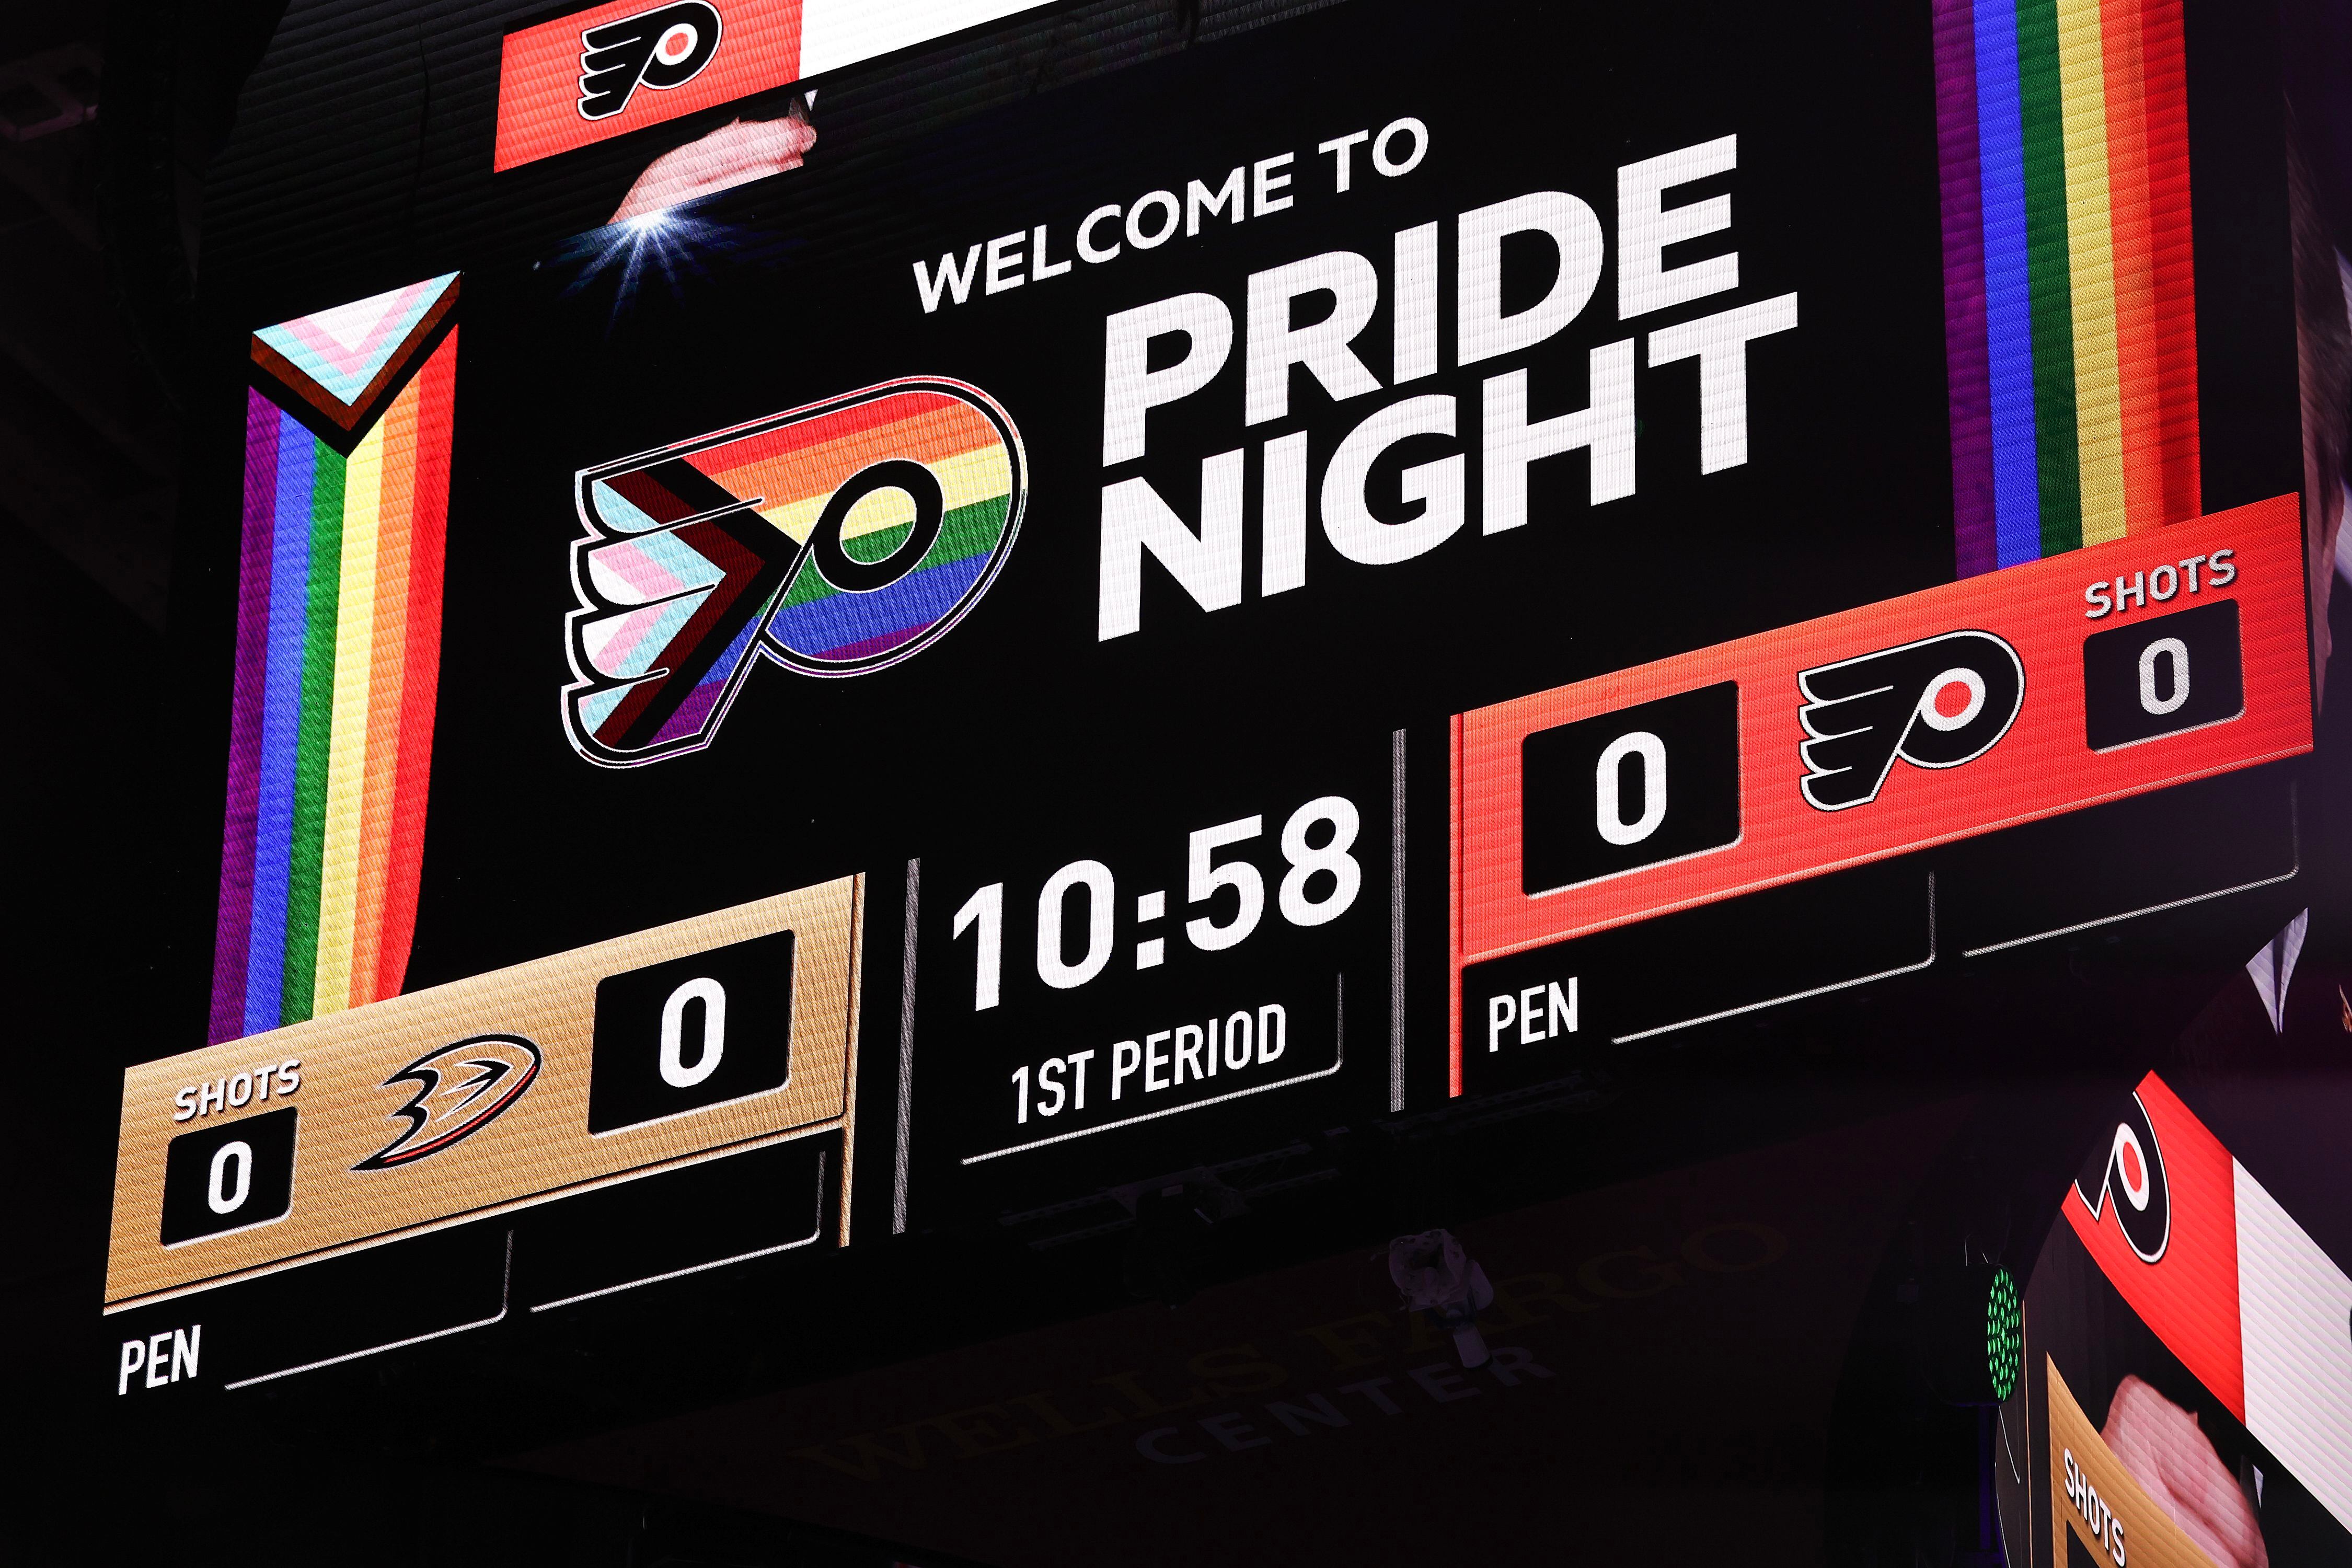 Anaheim Ducks - Our Pride Night warm up jerseys were